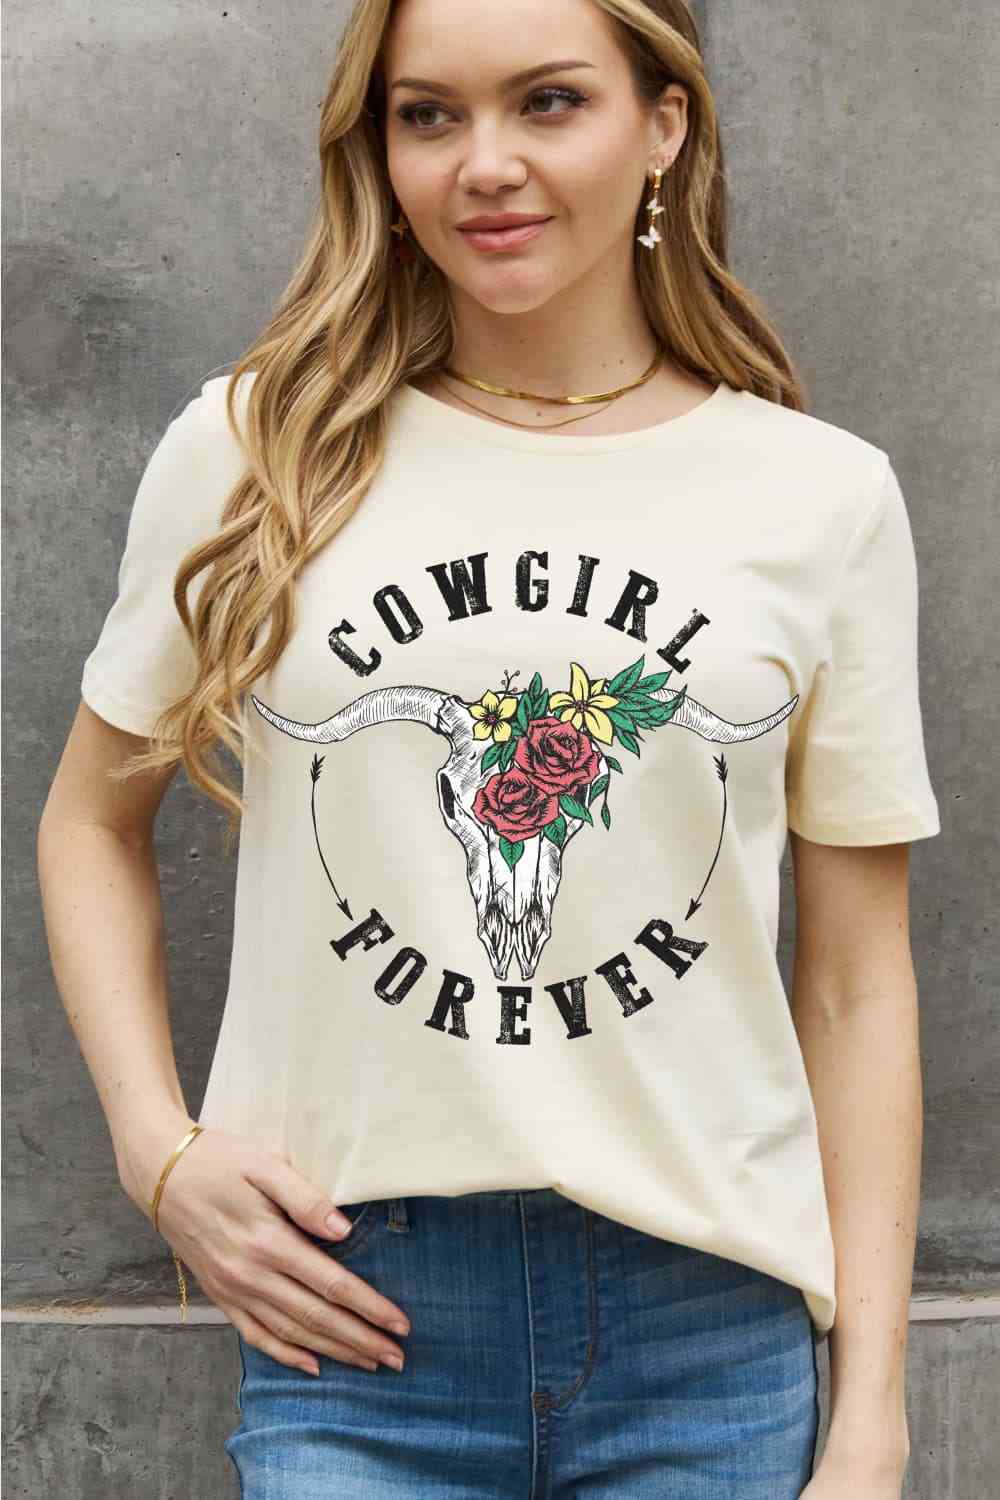 Camiseta de algodón con estampado COWGIRL FOREVER de tamaño completo de Simply Love